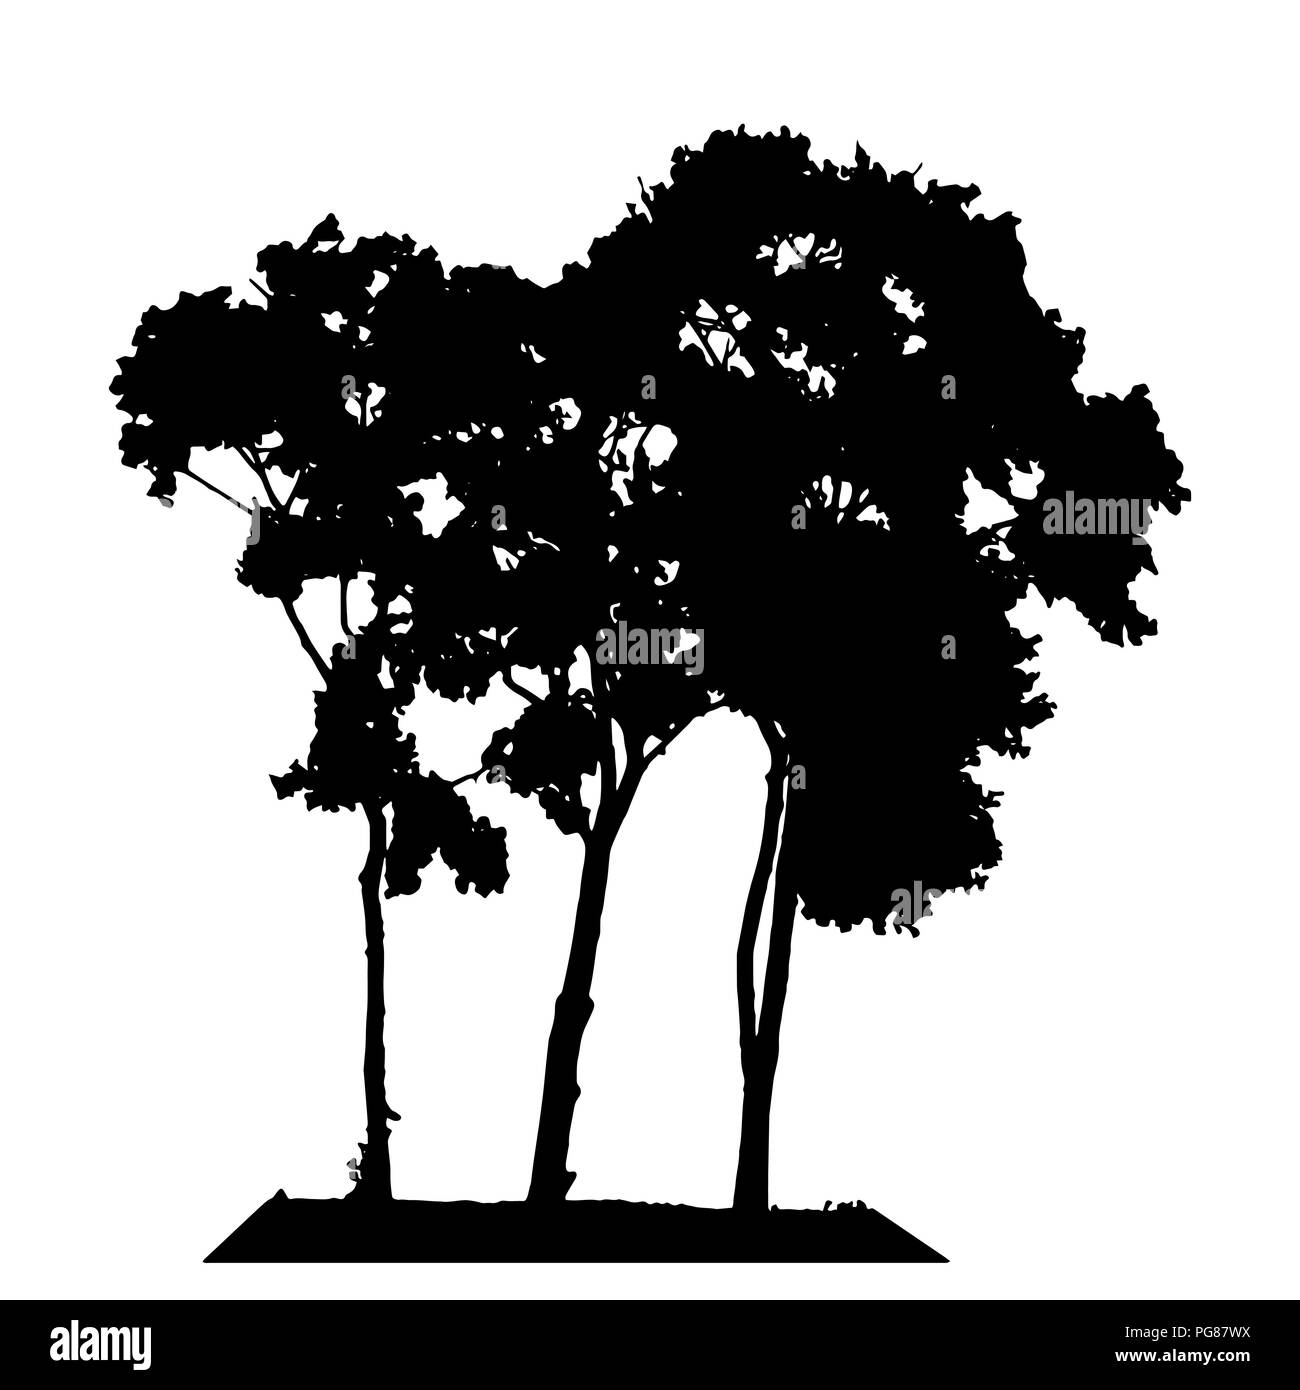 Baum Silhouette isoliert auf weißem Hintergrund. Vecrtor Abbildung. Stock Vektor